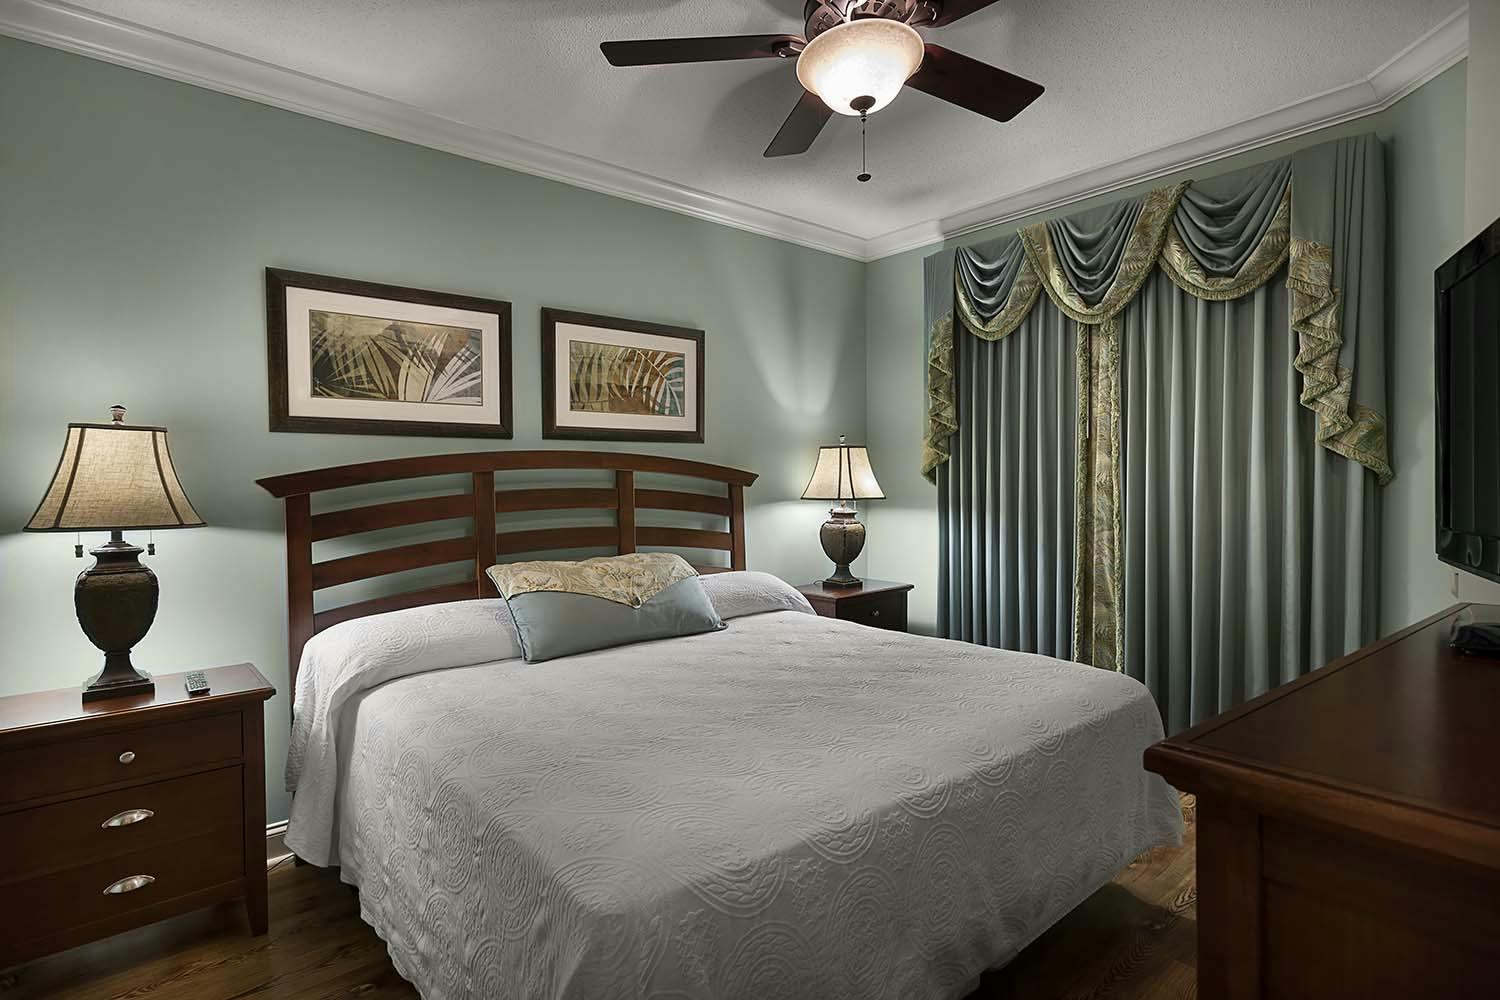 North Beach Resort & Villas - 1 Bedroom Oceanfront Beaufort Condo